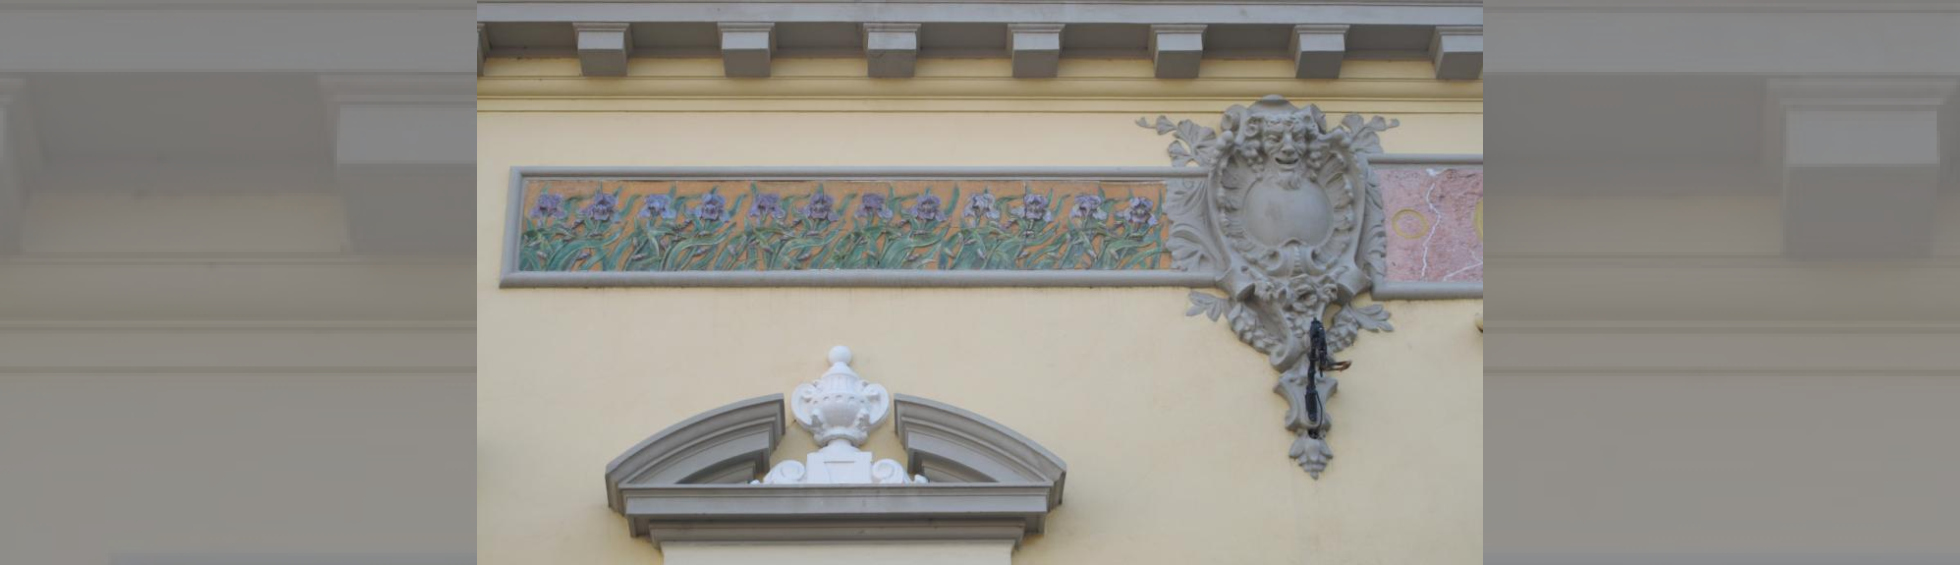 Décor de façade:Céramique représentant des iris symbole de bonnes nouvelles , tête de Satyre compagnon symbolisant le plaisir